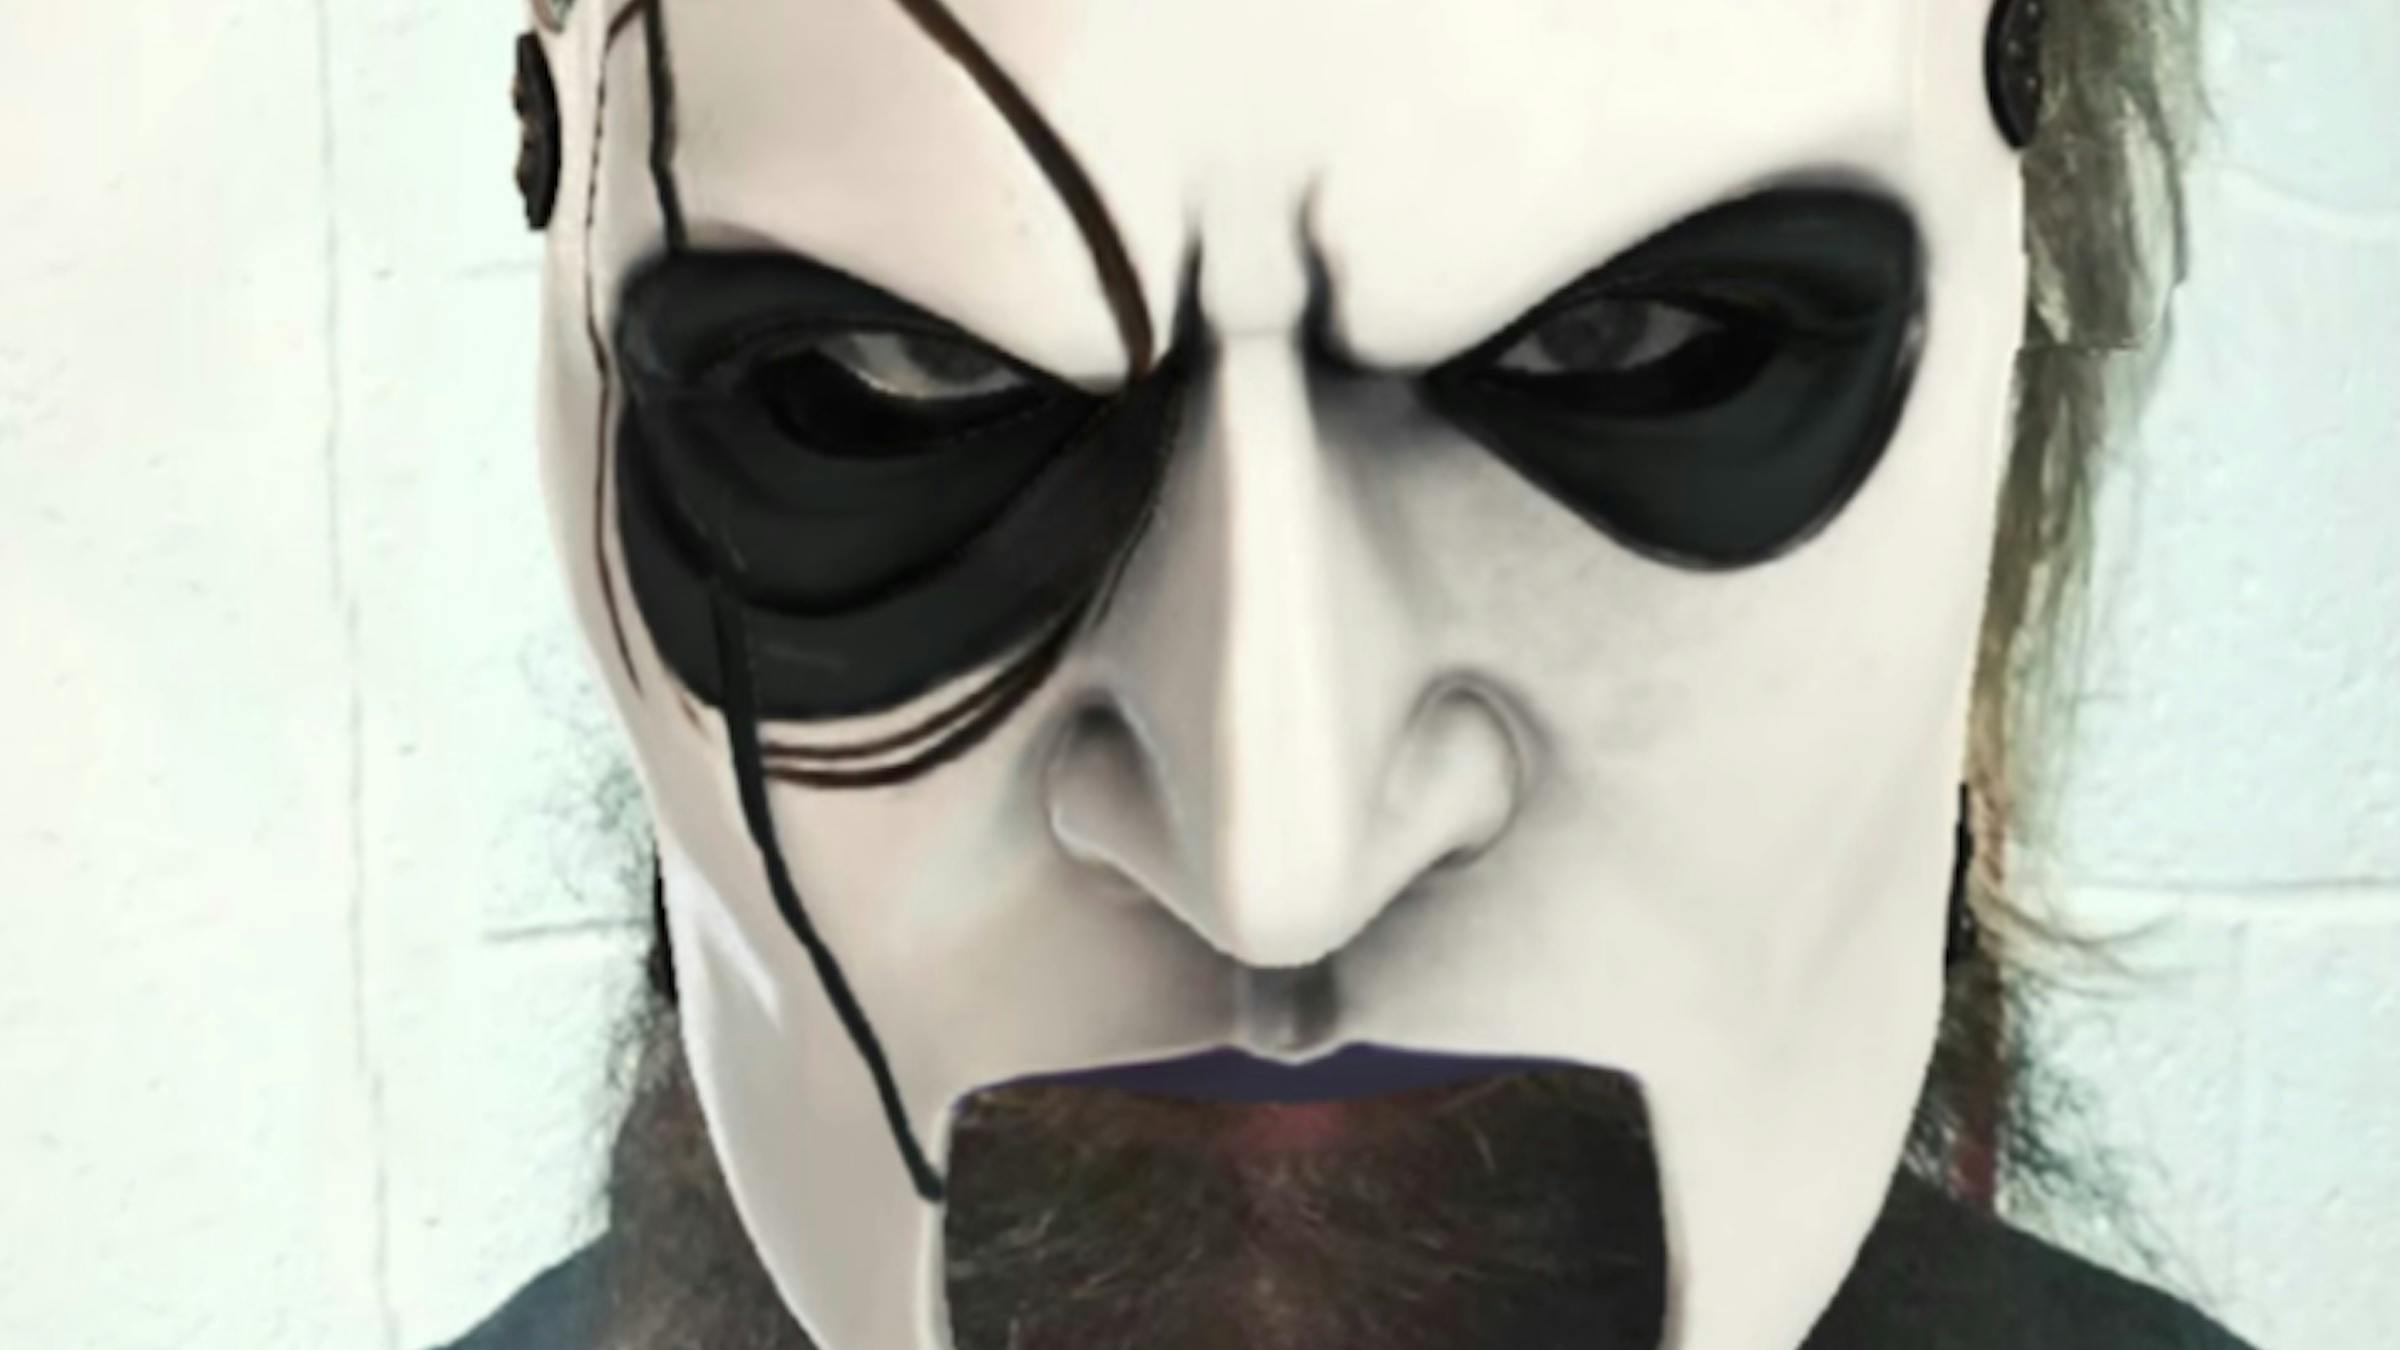 Slipknot Facebook Filter Lets You Wear The Band's Masks